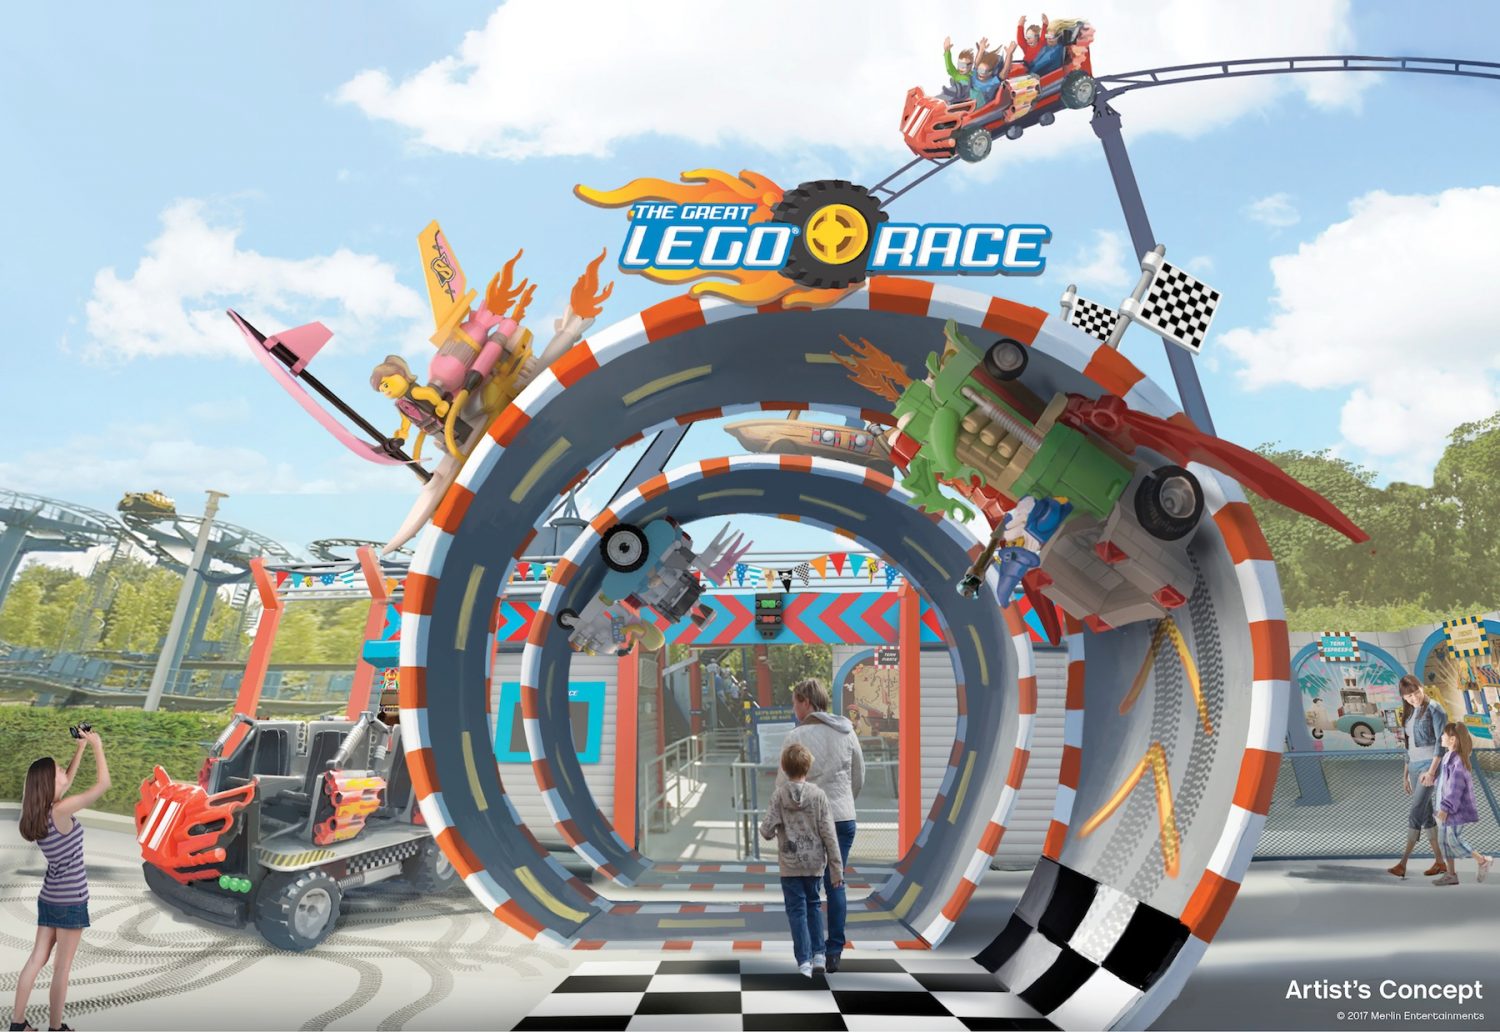 Legoland Florida guests get first taste of VR coaster ...